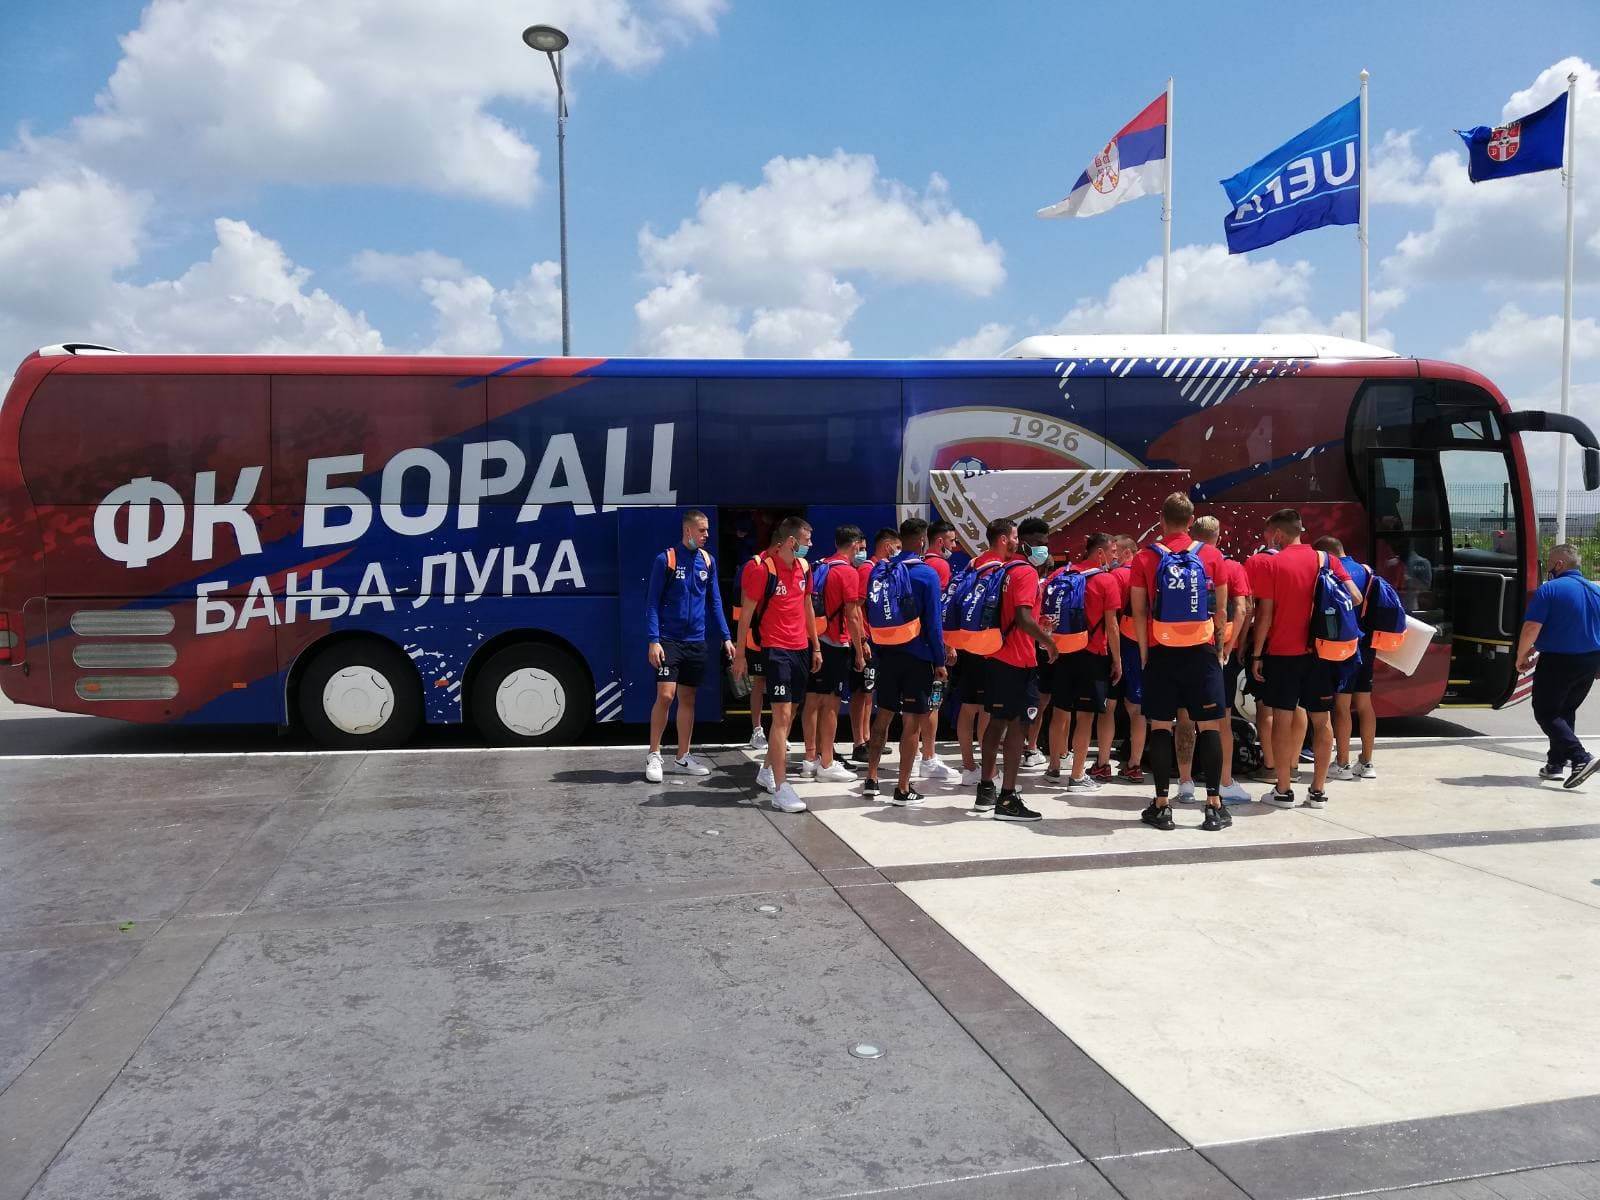  FK Borac ekspedicija stigla u Beograd (FOTO) 